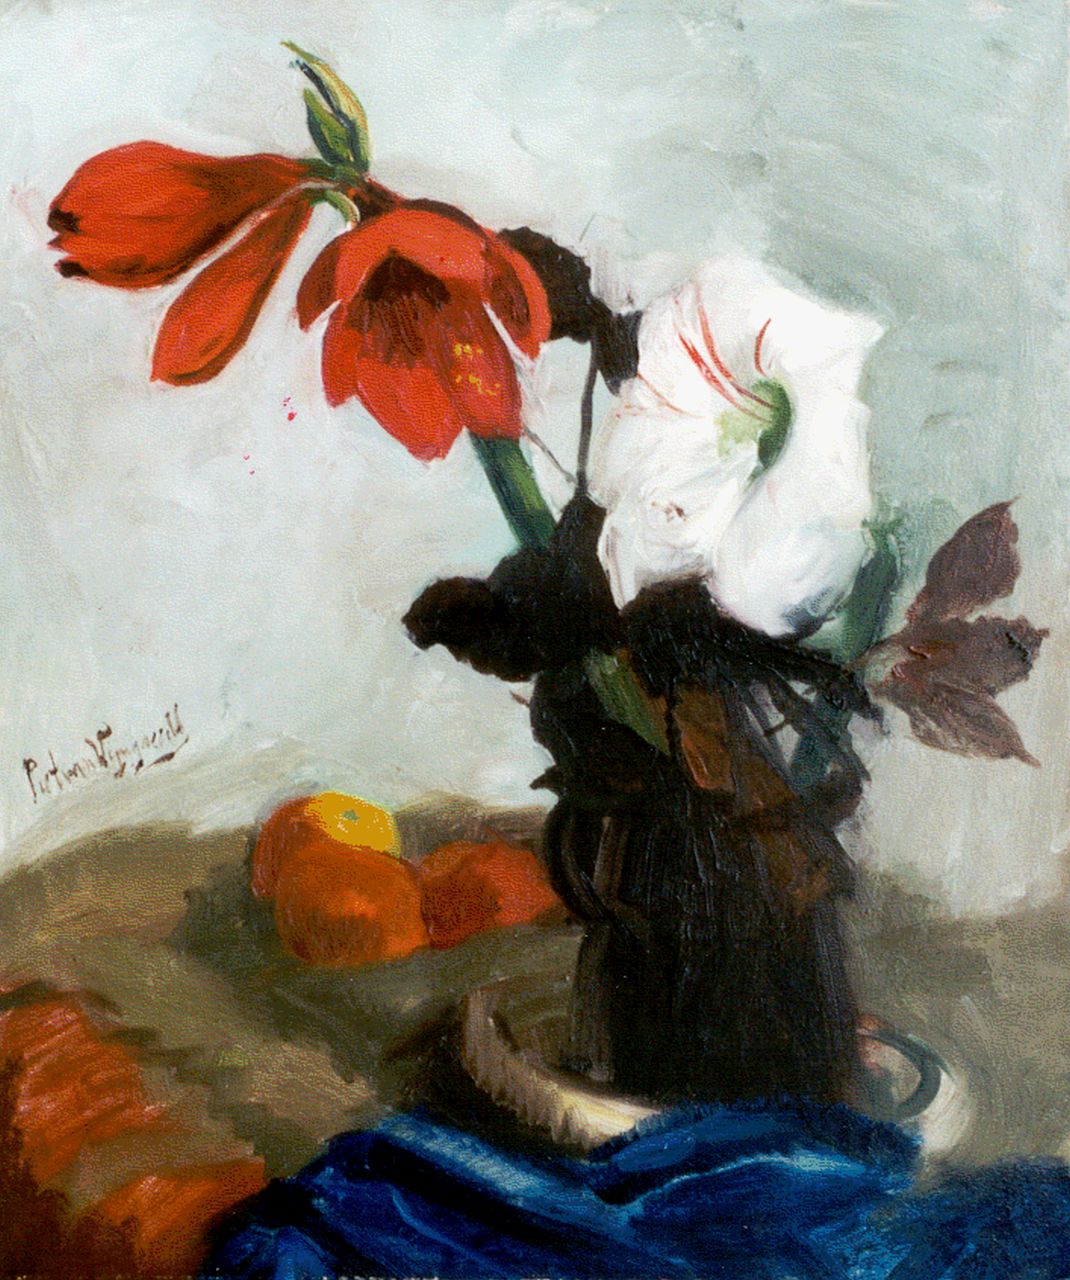 Wijngaerdt P.T. van | Petrus Theodorus 'Piet' van Wijngaerdt, Red and white amaryllis, Öl auf Leinwand 80,2 x 67,2 cm, signed l.c.